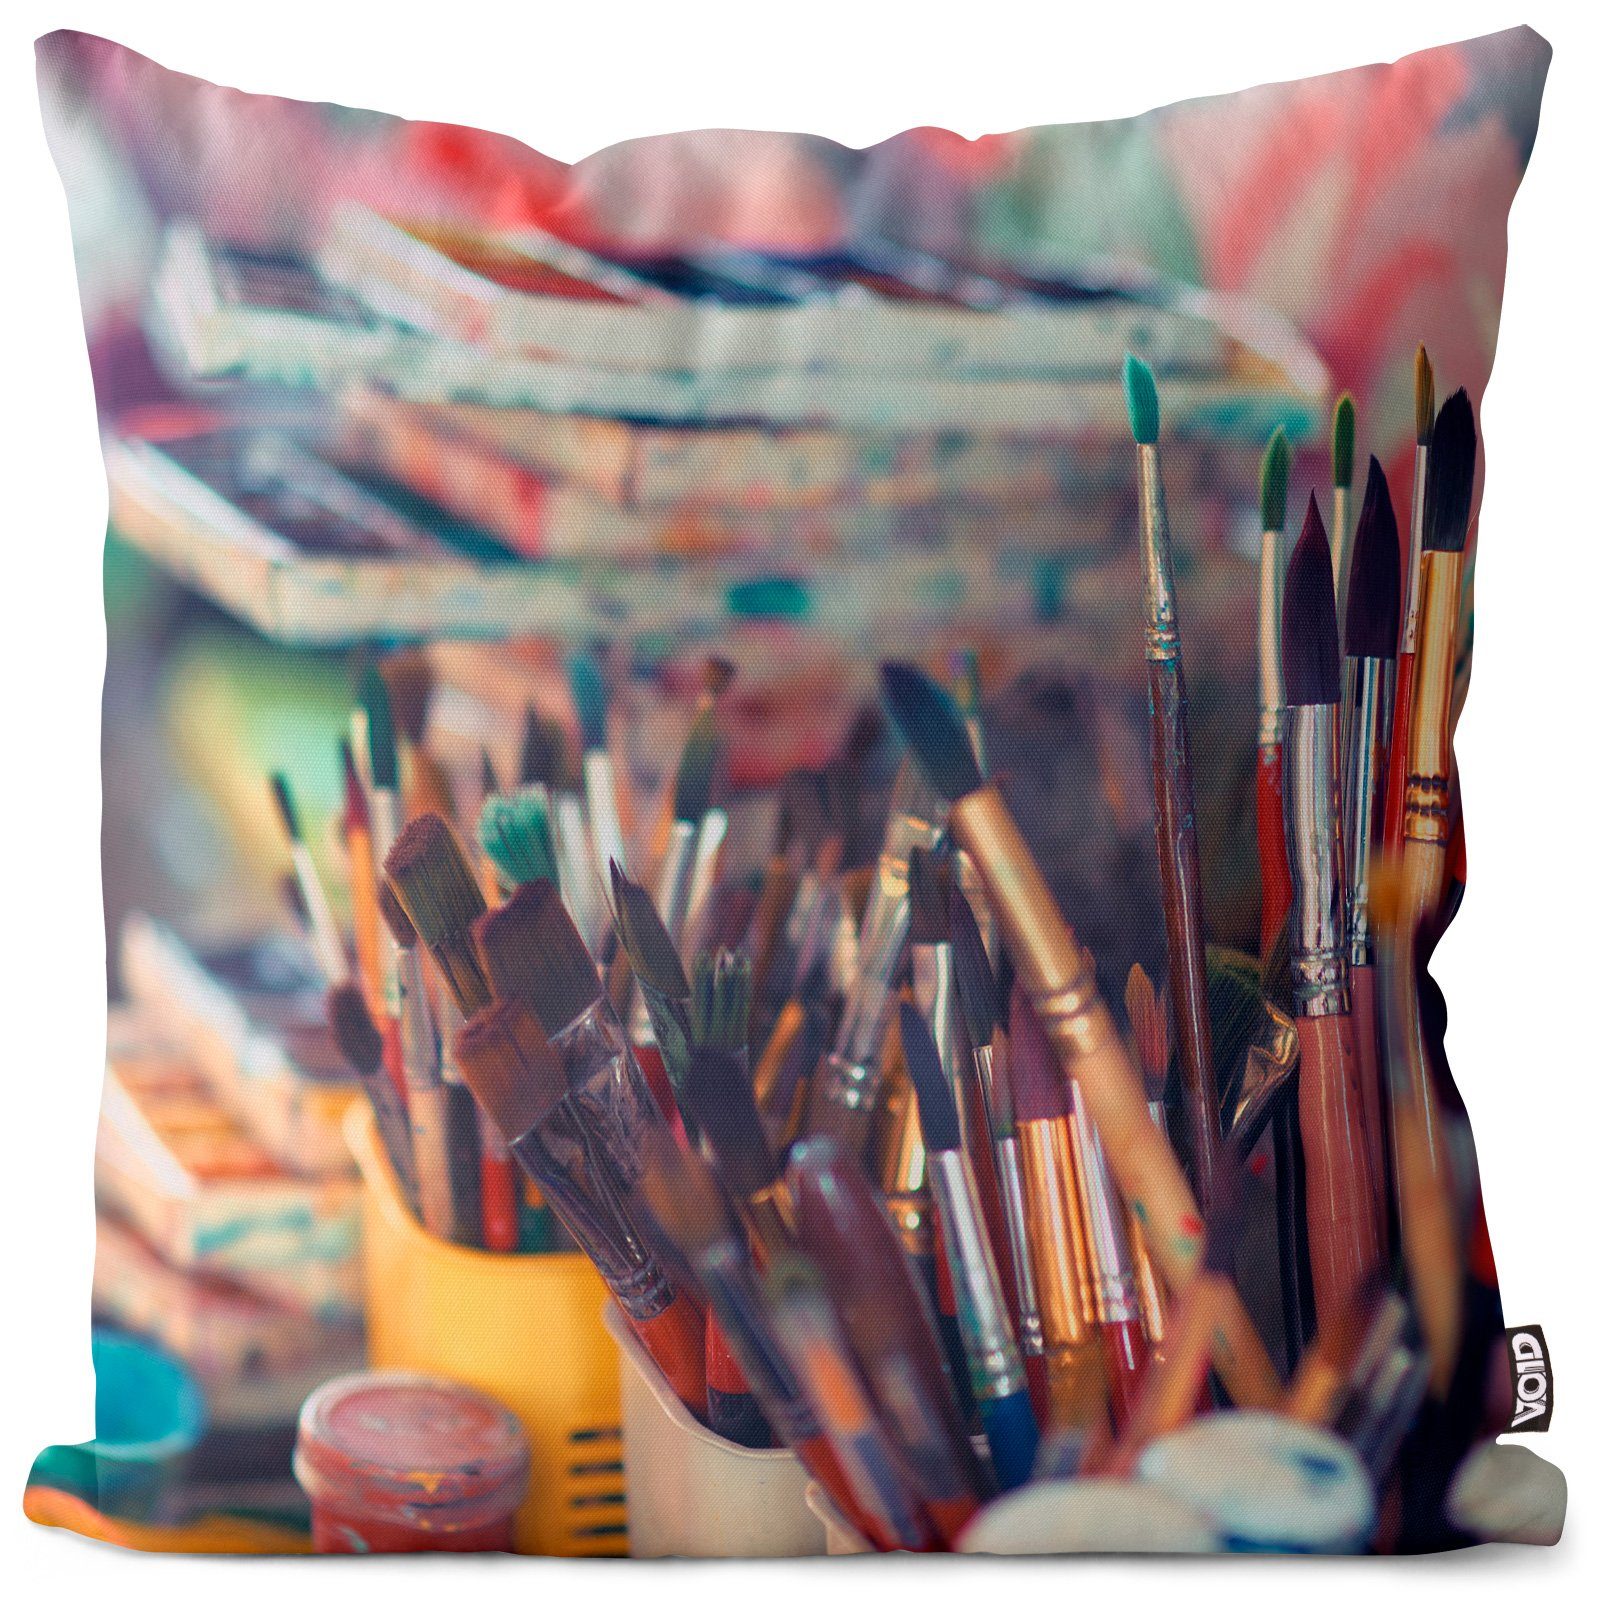 Kissenbezug, VOID (1 Stück), Sofa-Kissen Malen Pinsel Malerei Hobby Kunst Aquarell Öl Wasserfarben lernen Farben Palette Zeichnen Leinwand Farbtopf Acryl Ölfarben